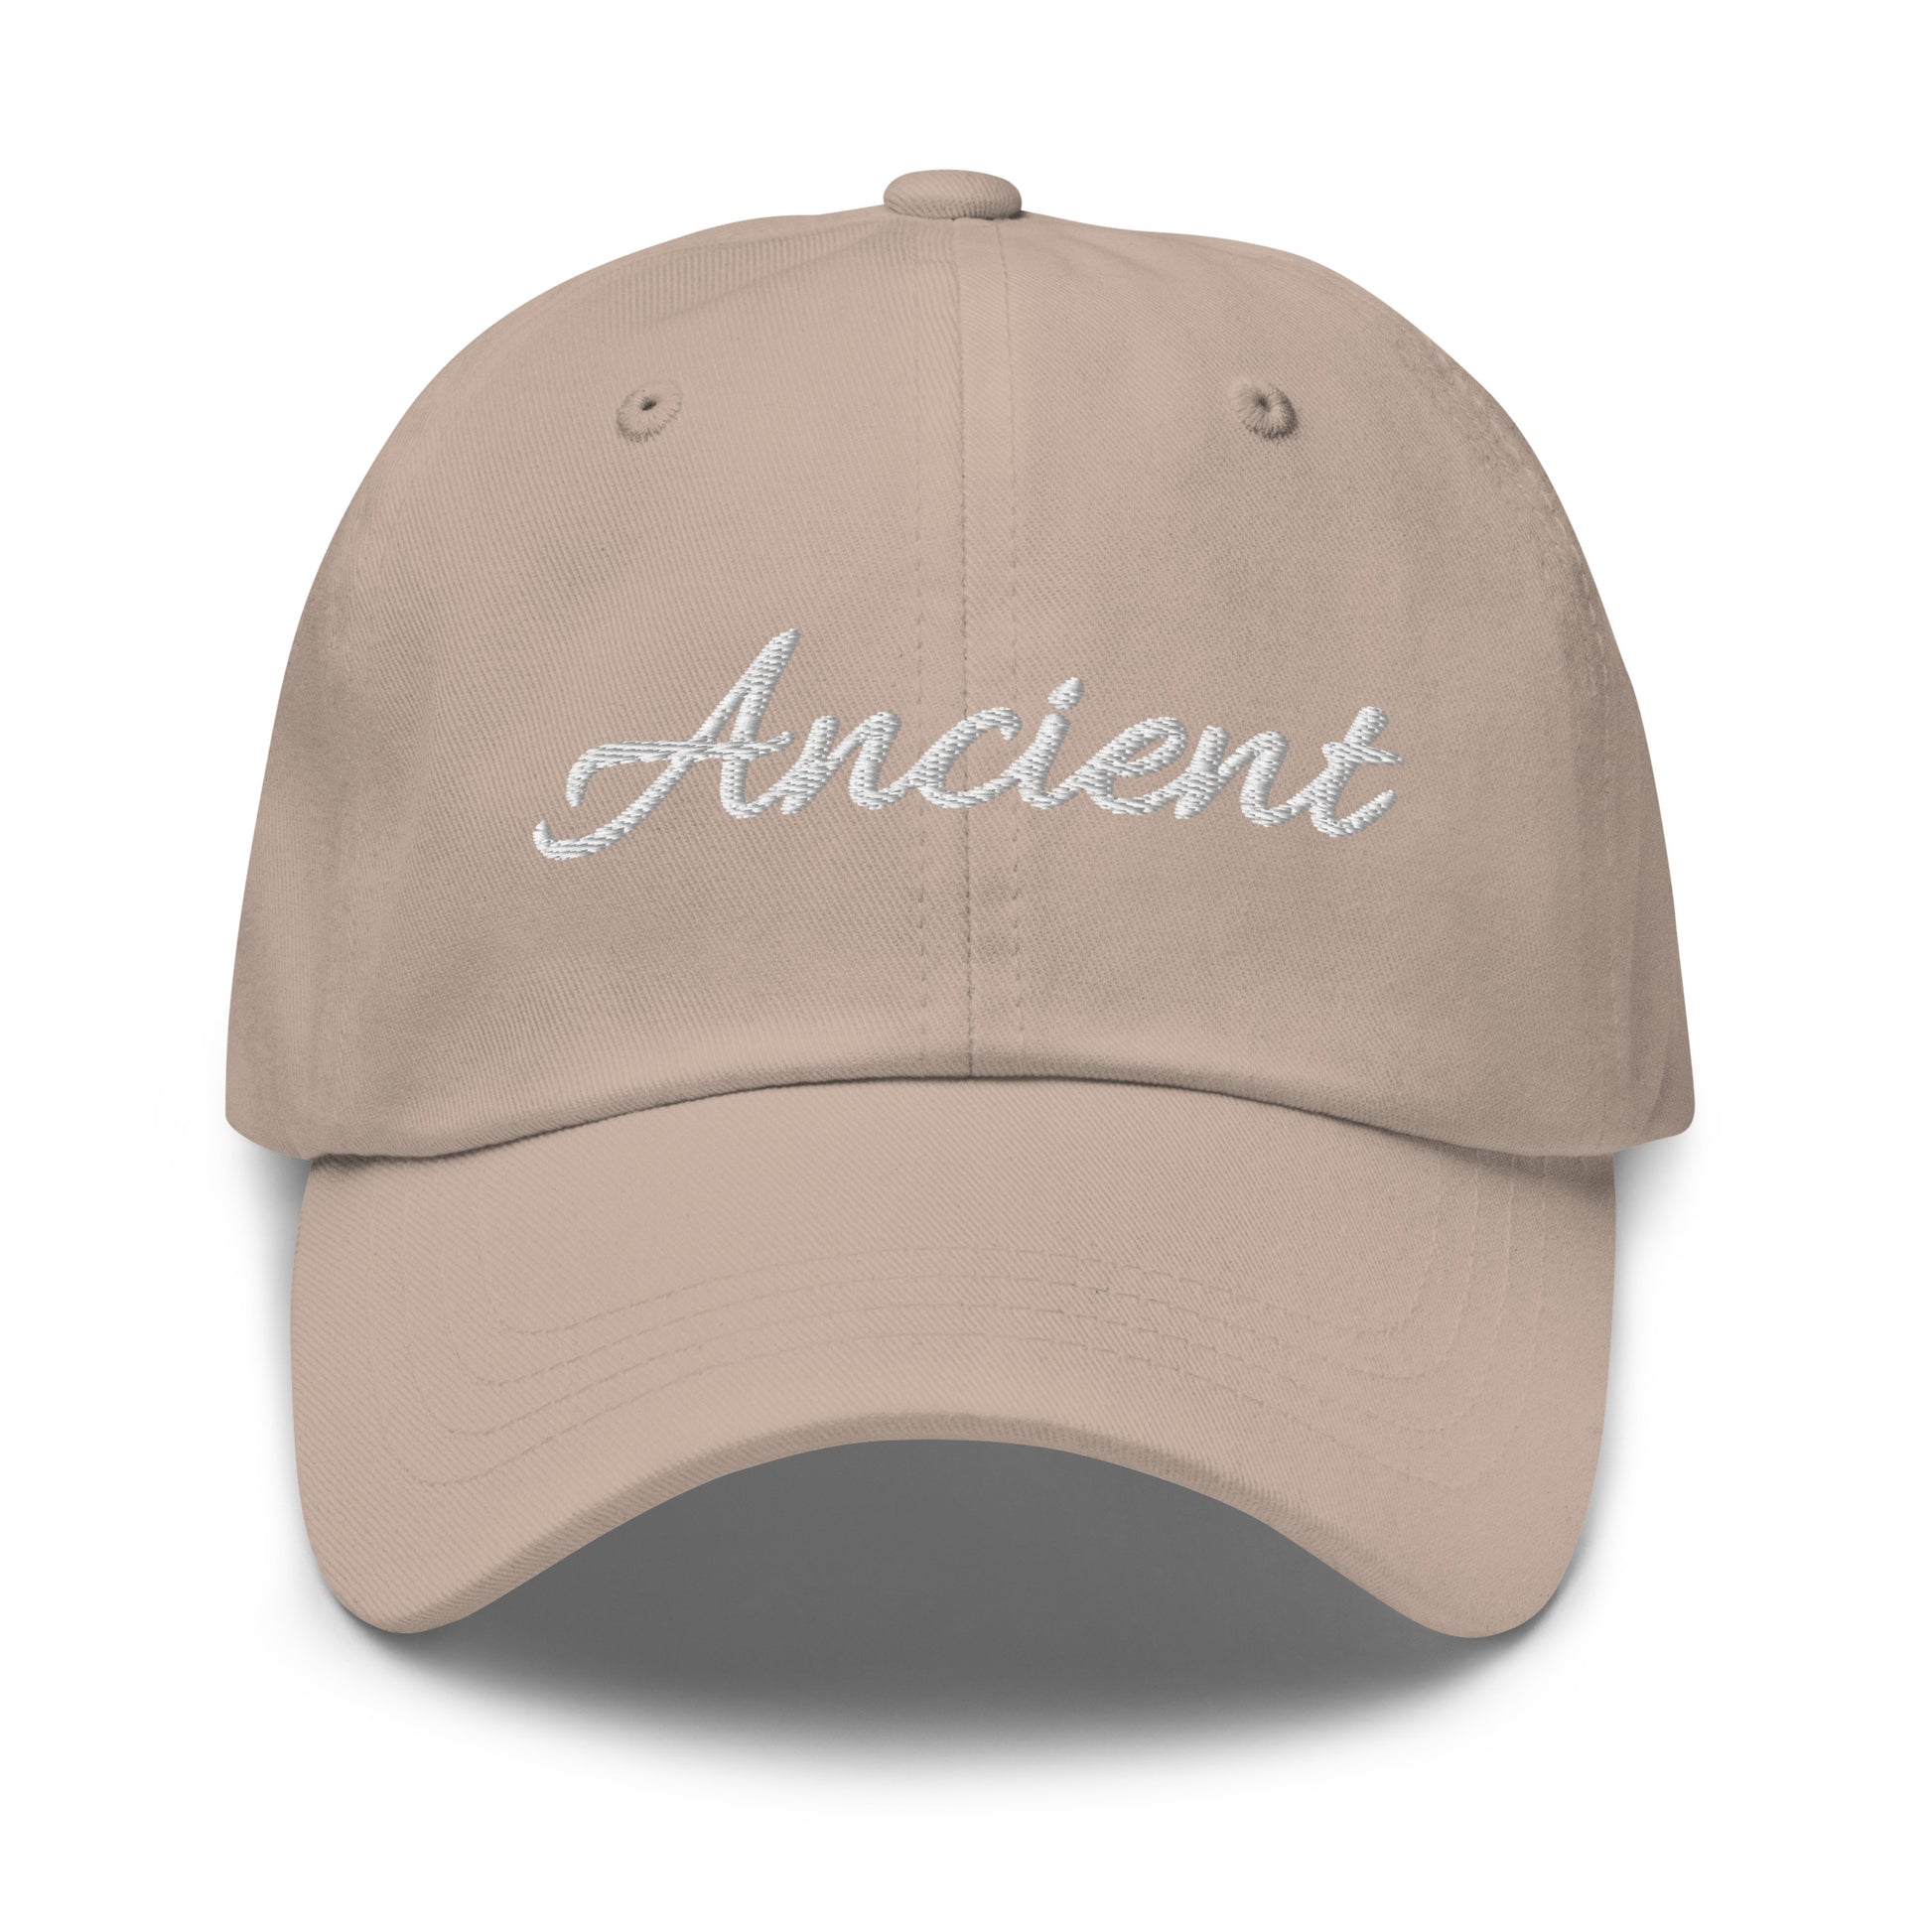 Ancient Hat / Word Ancient Hat / Ancient Dad hat